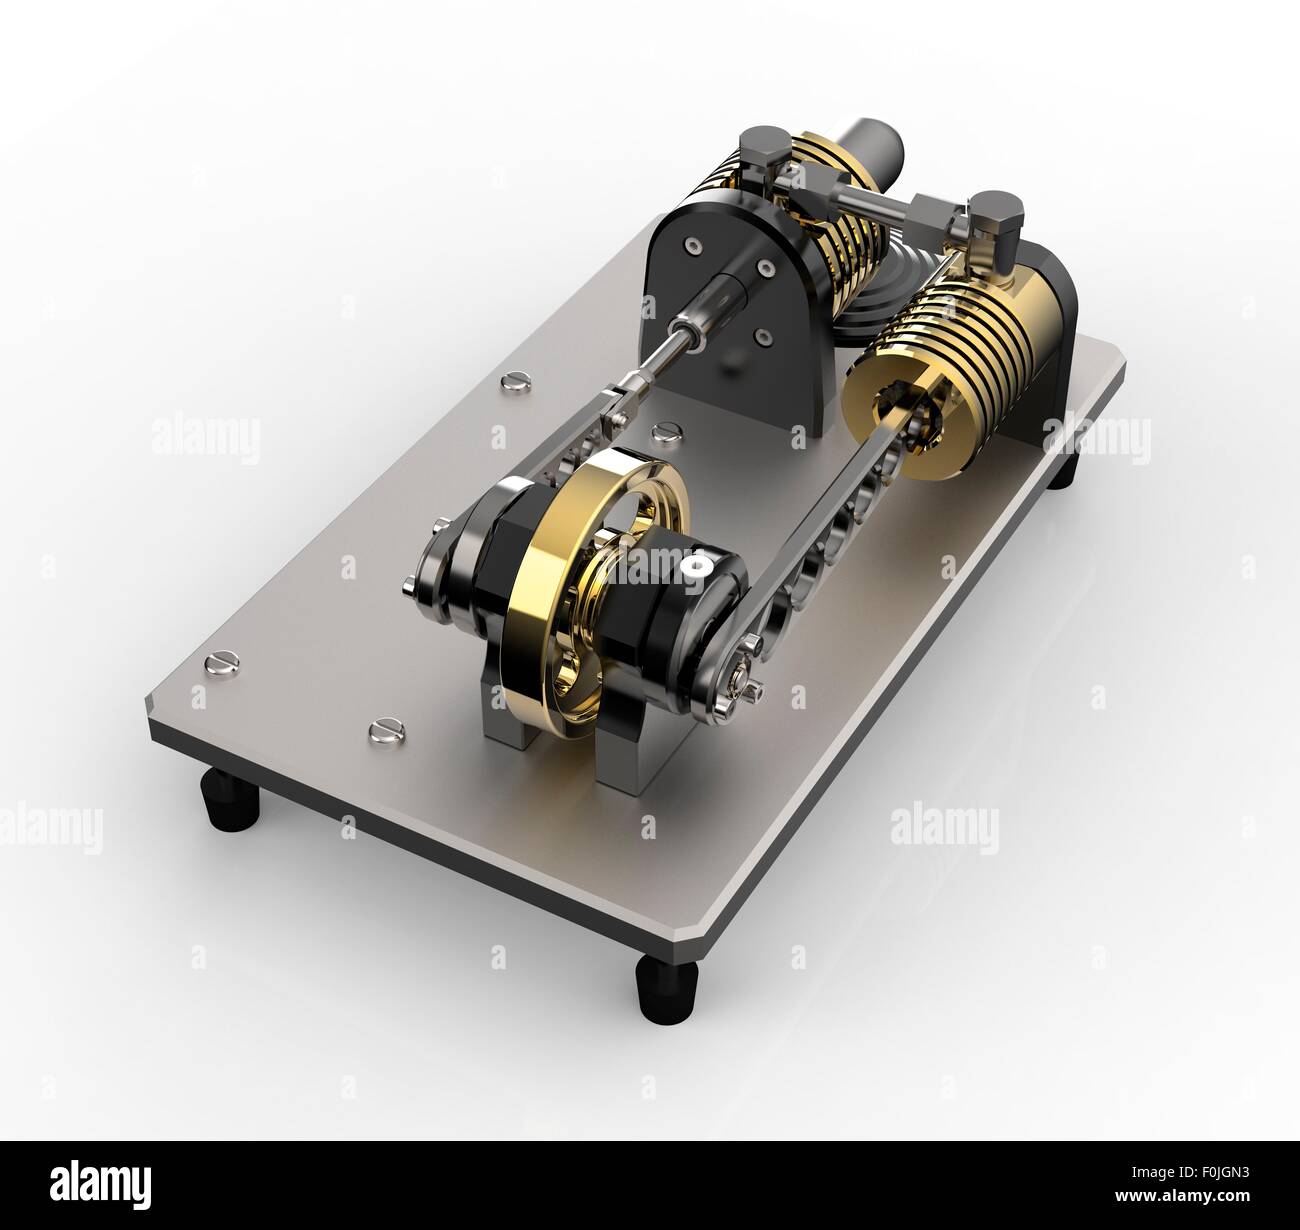 Stirling engine immagini e fotografie stock ad alta risoluzione